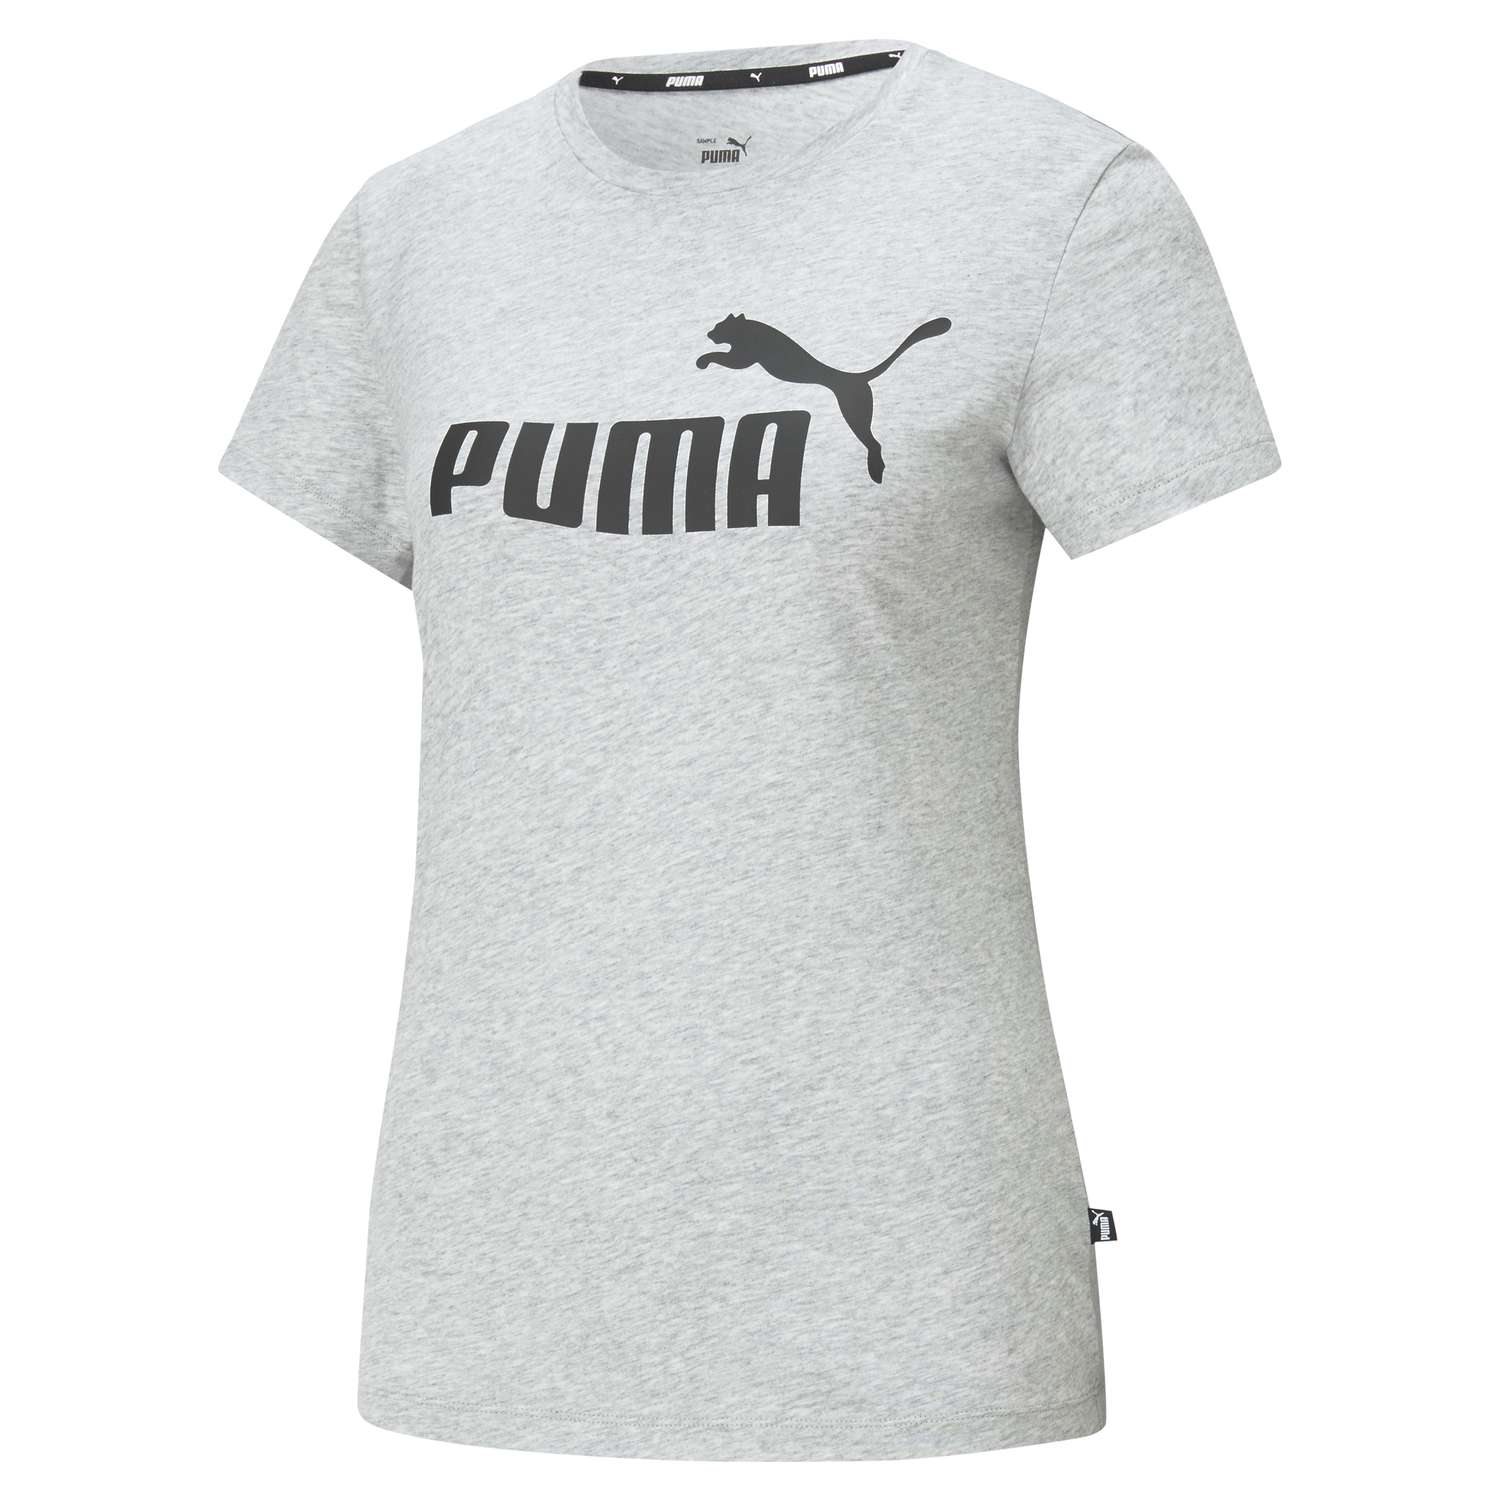 Футболка Puma 58677404 - фото 1